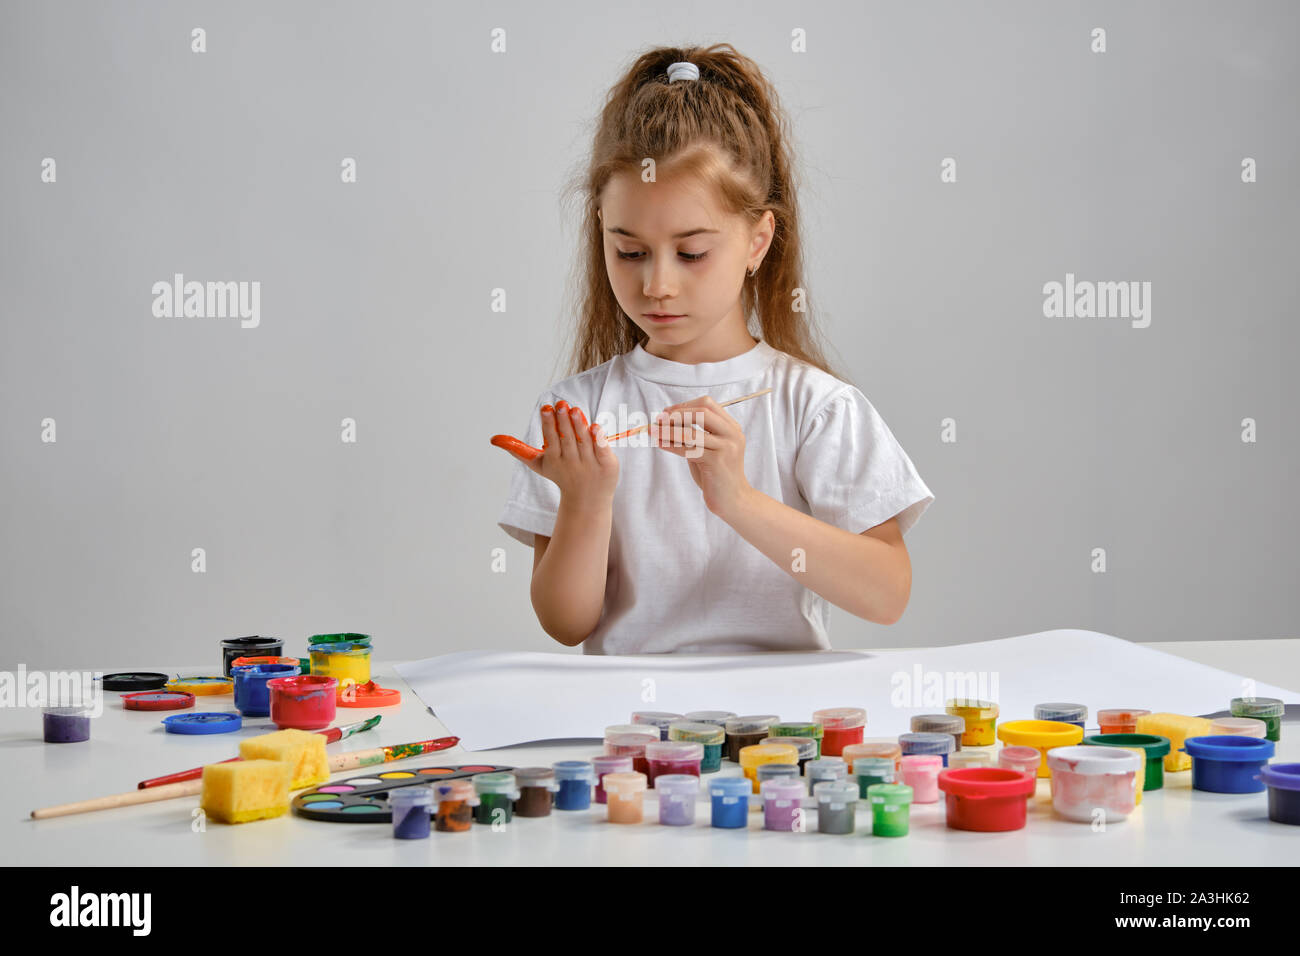 Petite fille en t-shirt blanc assis à table avec des peintures colorées et whatman sur elle, la peinture ses mains. Isolé sur blanc. Medium close-up. Banque D'Images